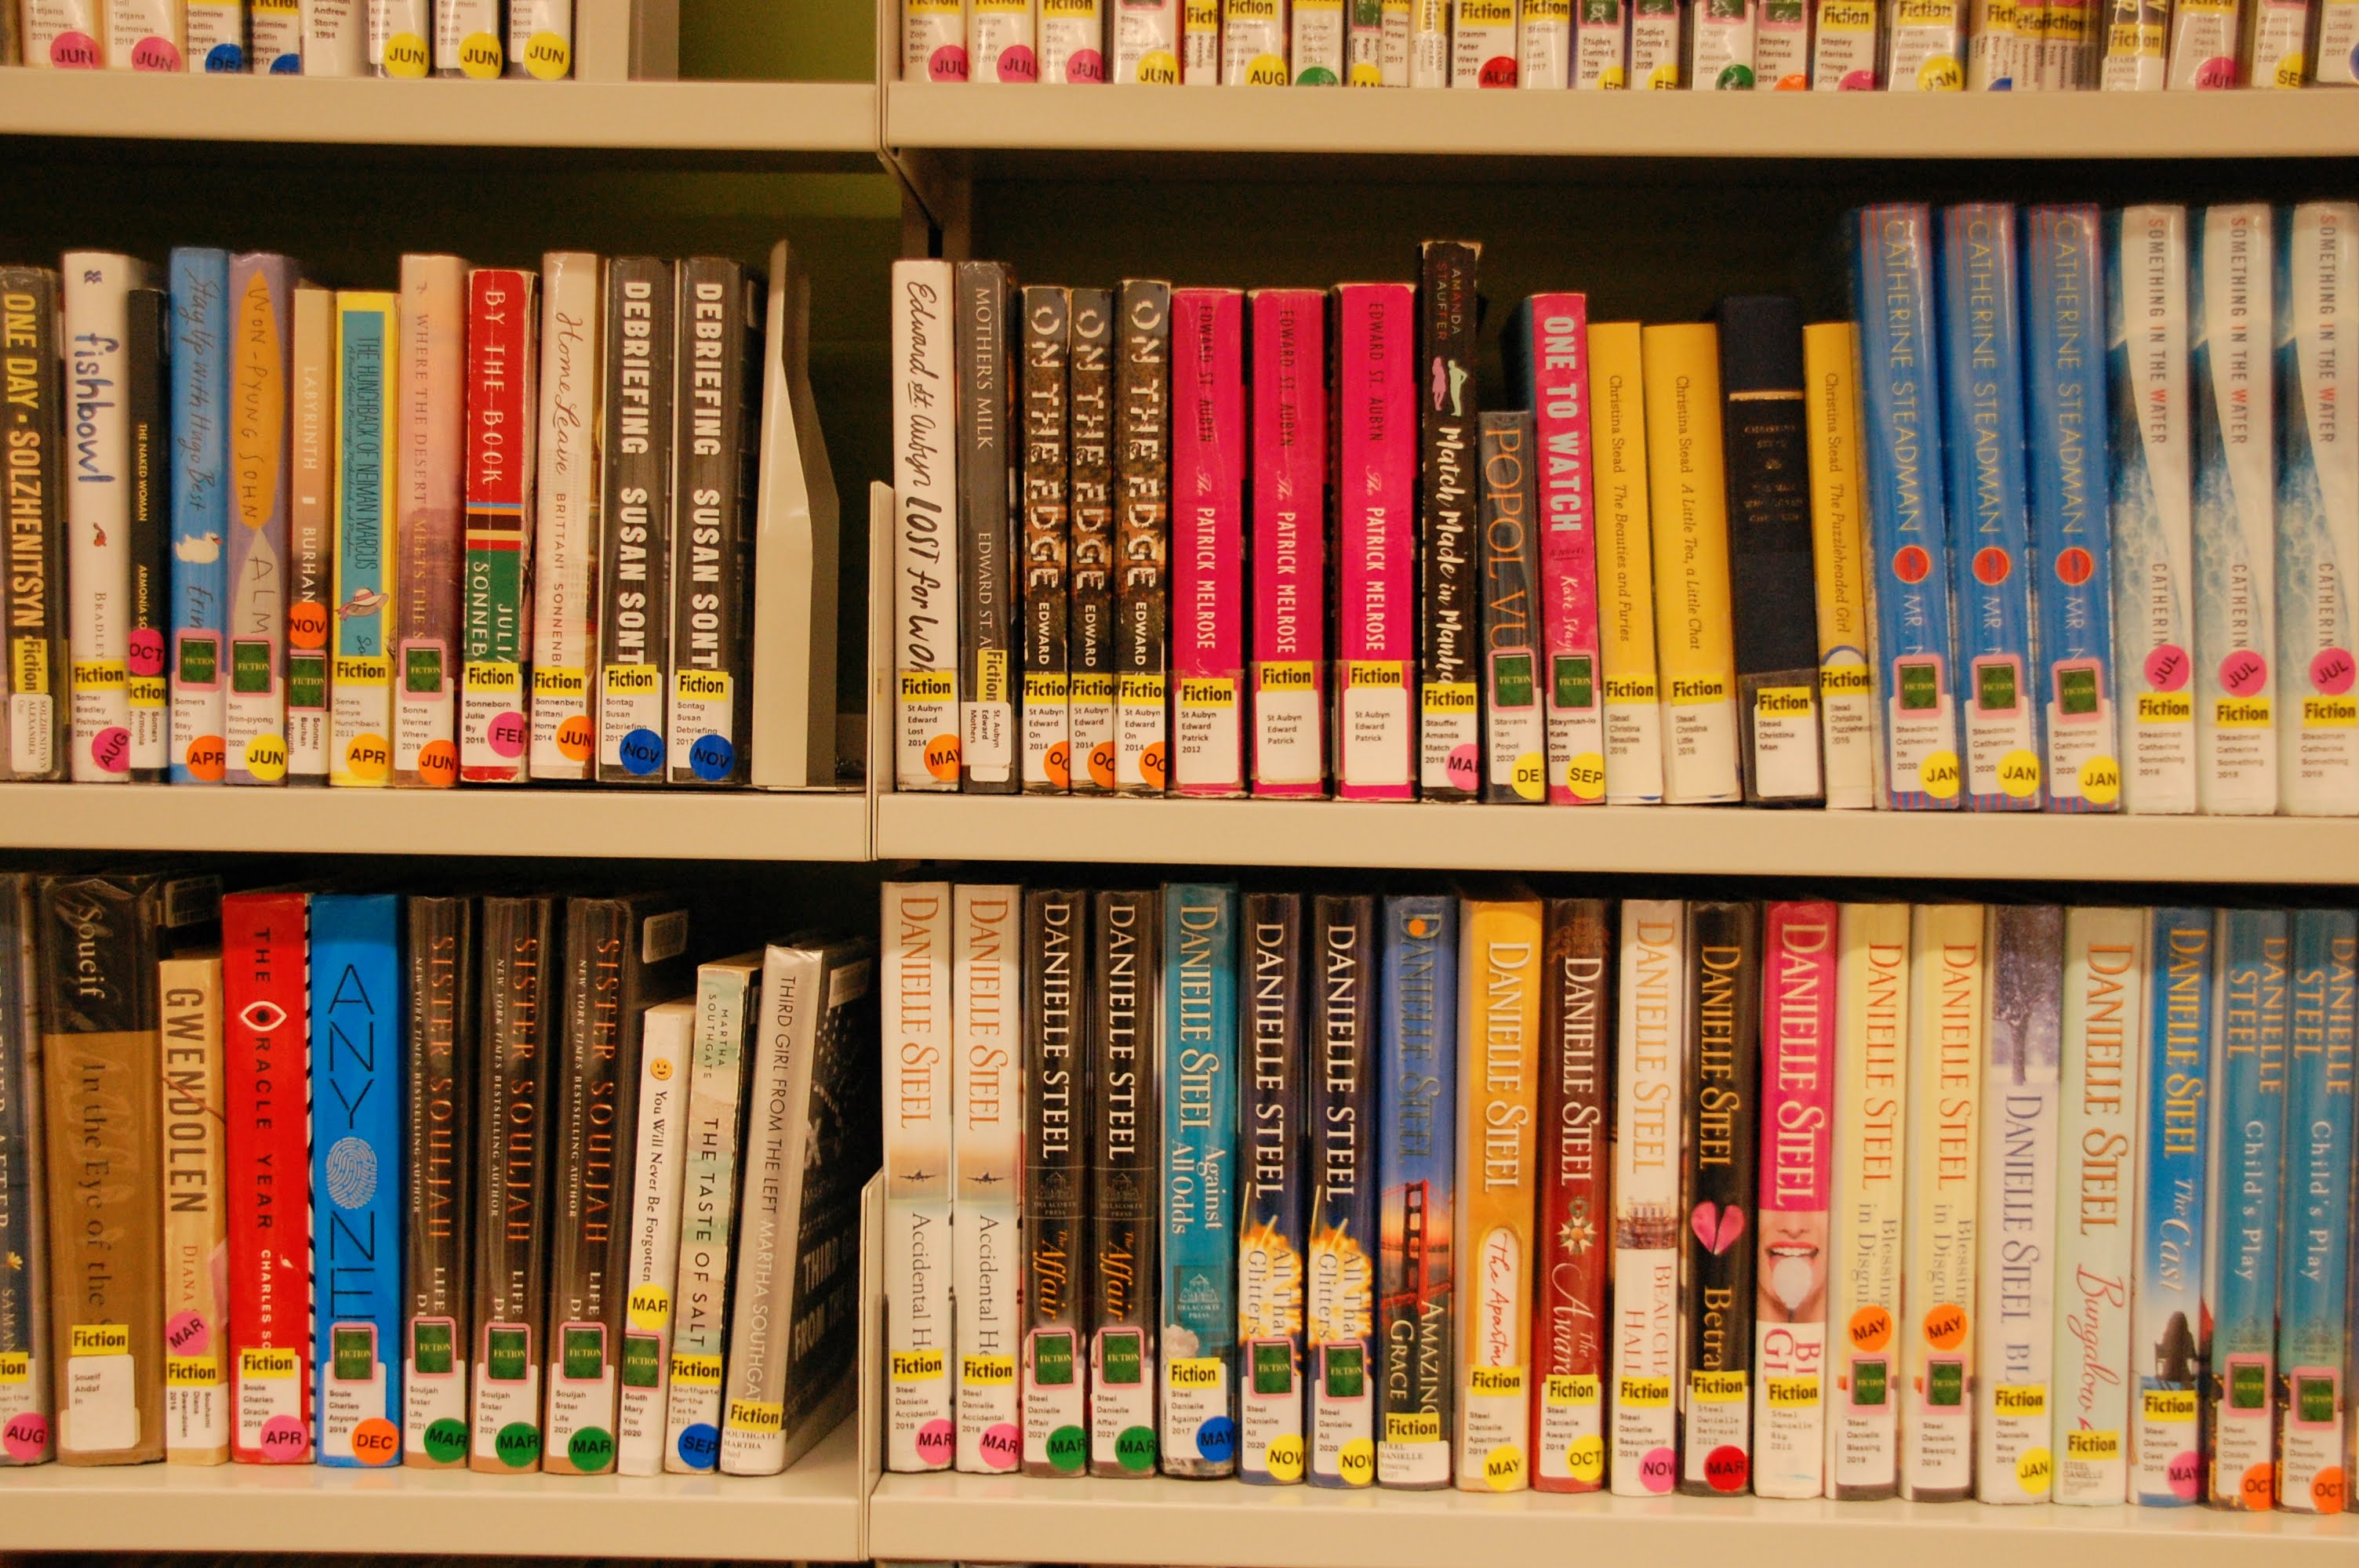 Image of books on shelves